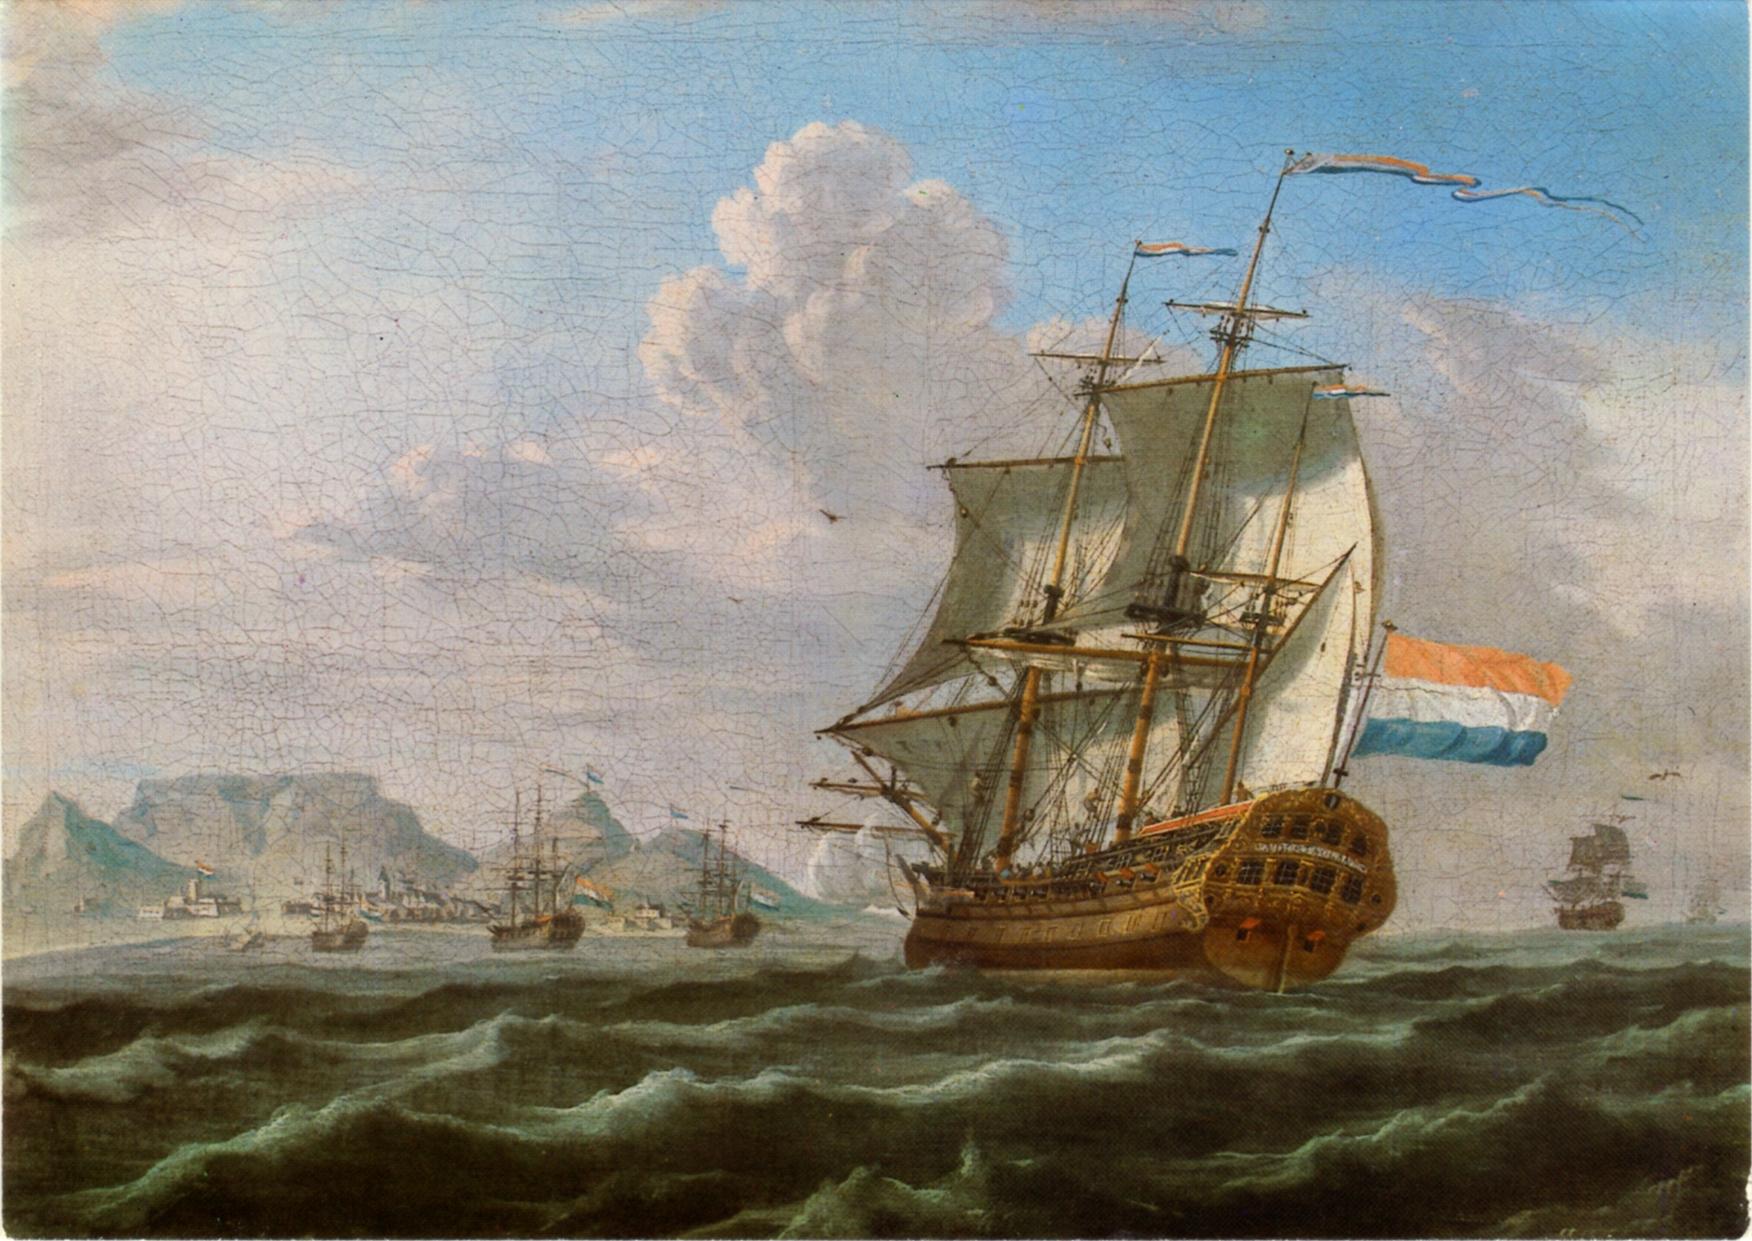 Goeie ouwe tijd. Het VOC schip “Noord-Nieuwland” voor de Tafelberg. Anonieme schilder, ca. 1762. Bron: Wikipedia.